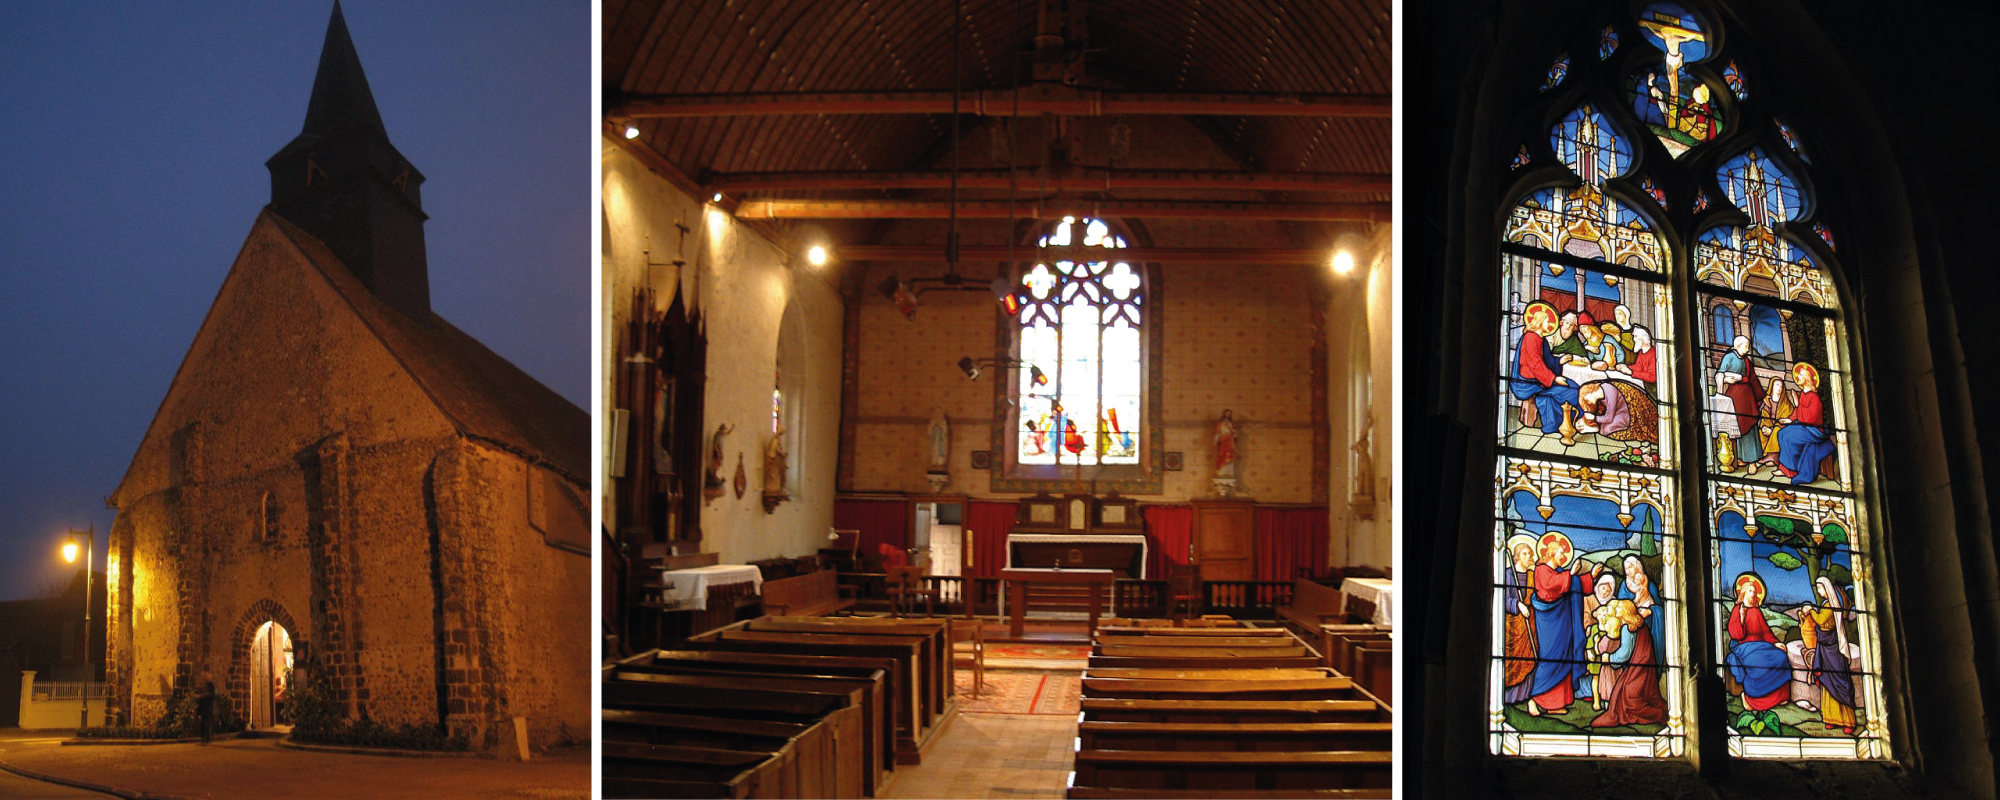 Venez faire une visite culturelle de l'église de notre village à Chapelle Royale en Eure et Loir dans le Perche